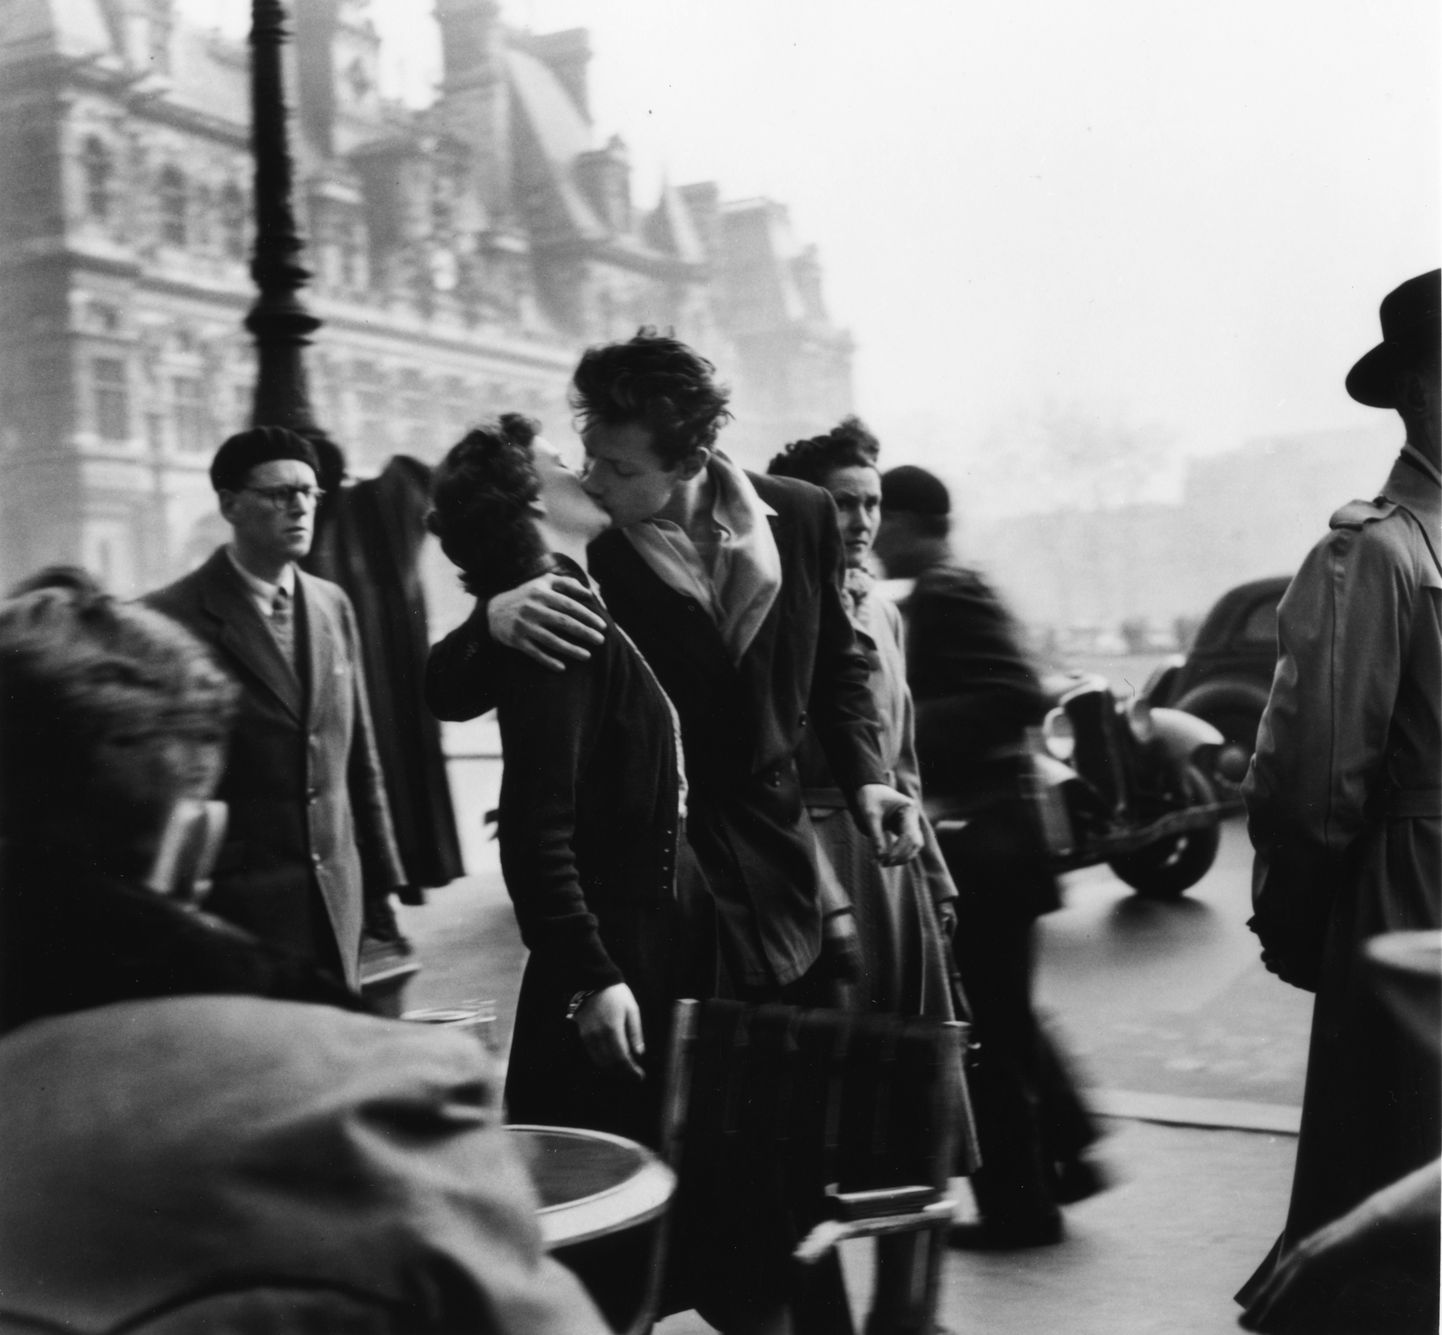 "Le baiser de l'hôtel de ville Paris" (1950)